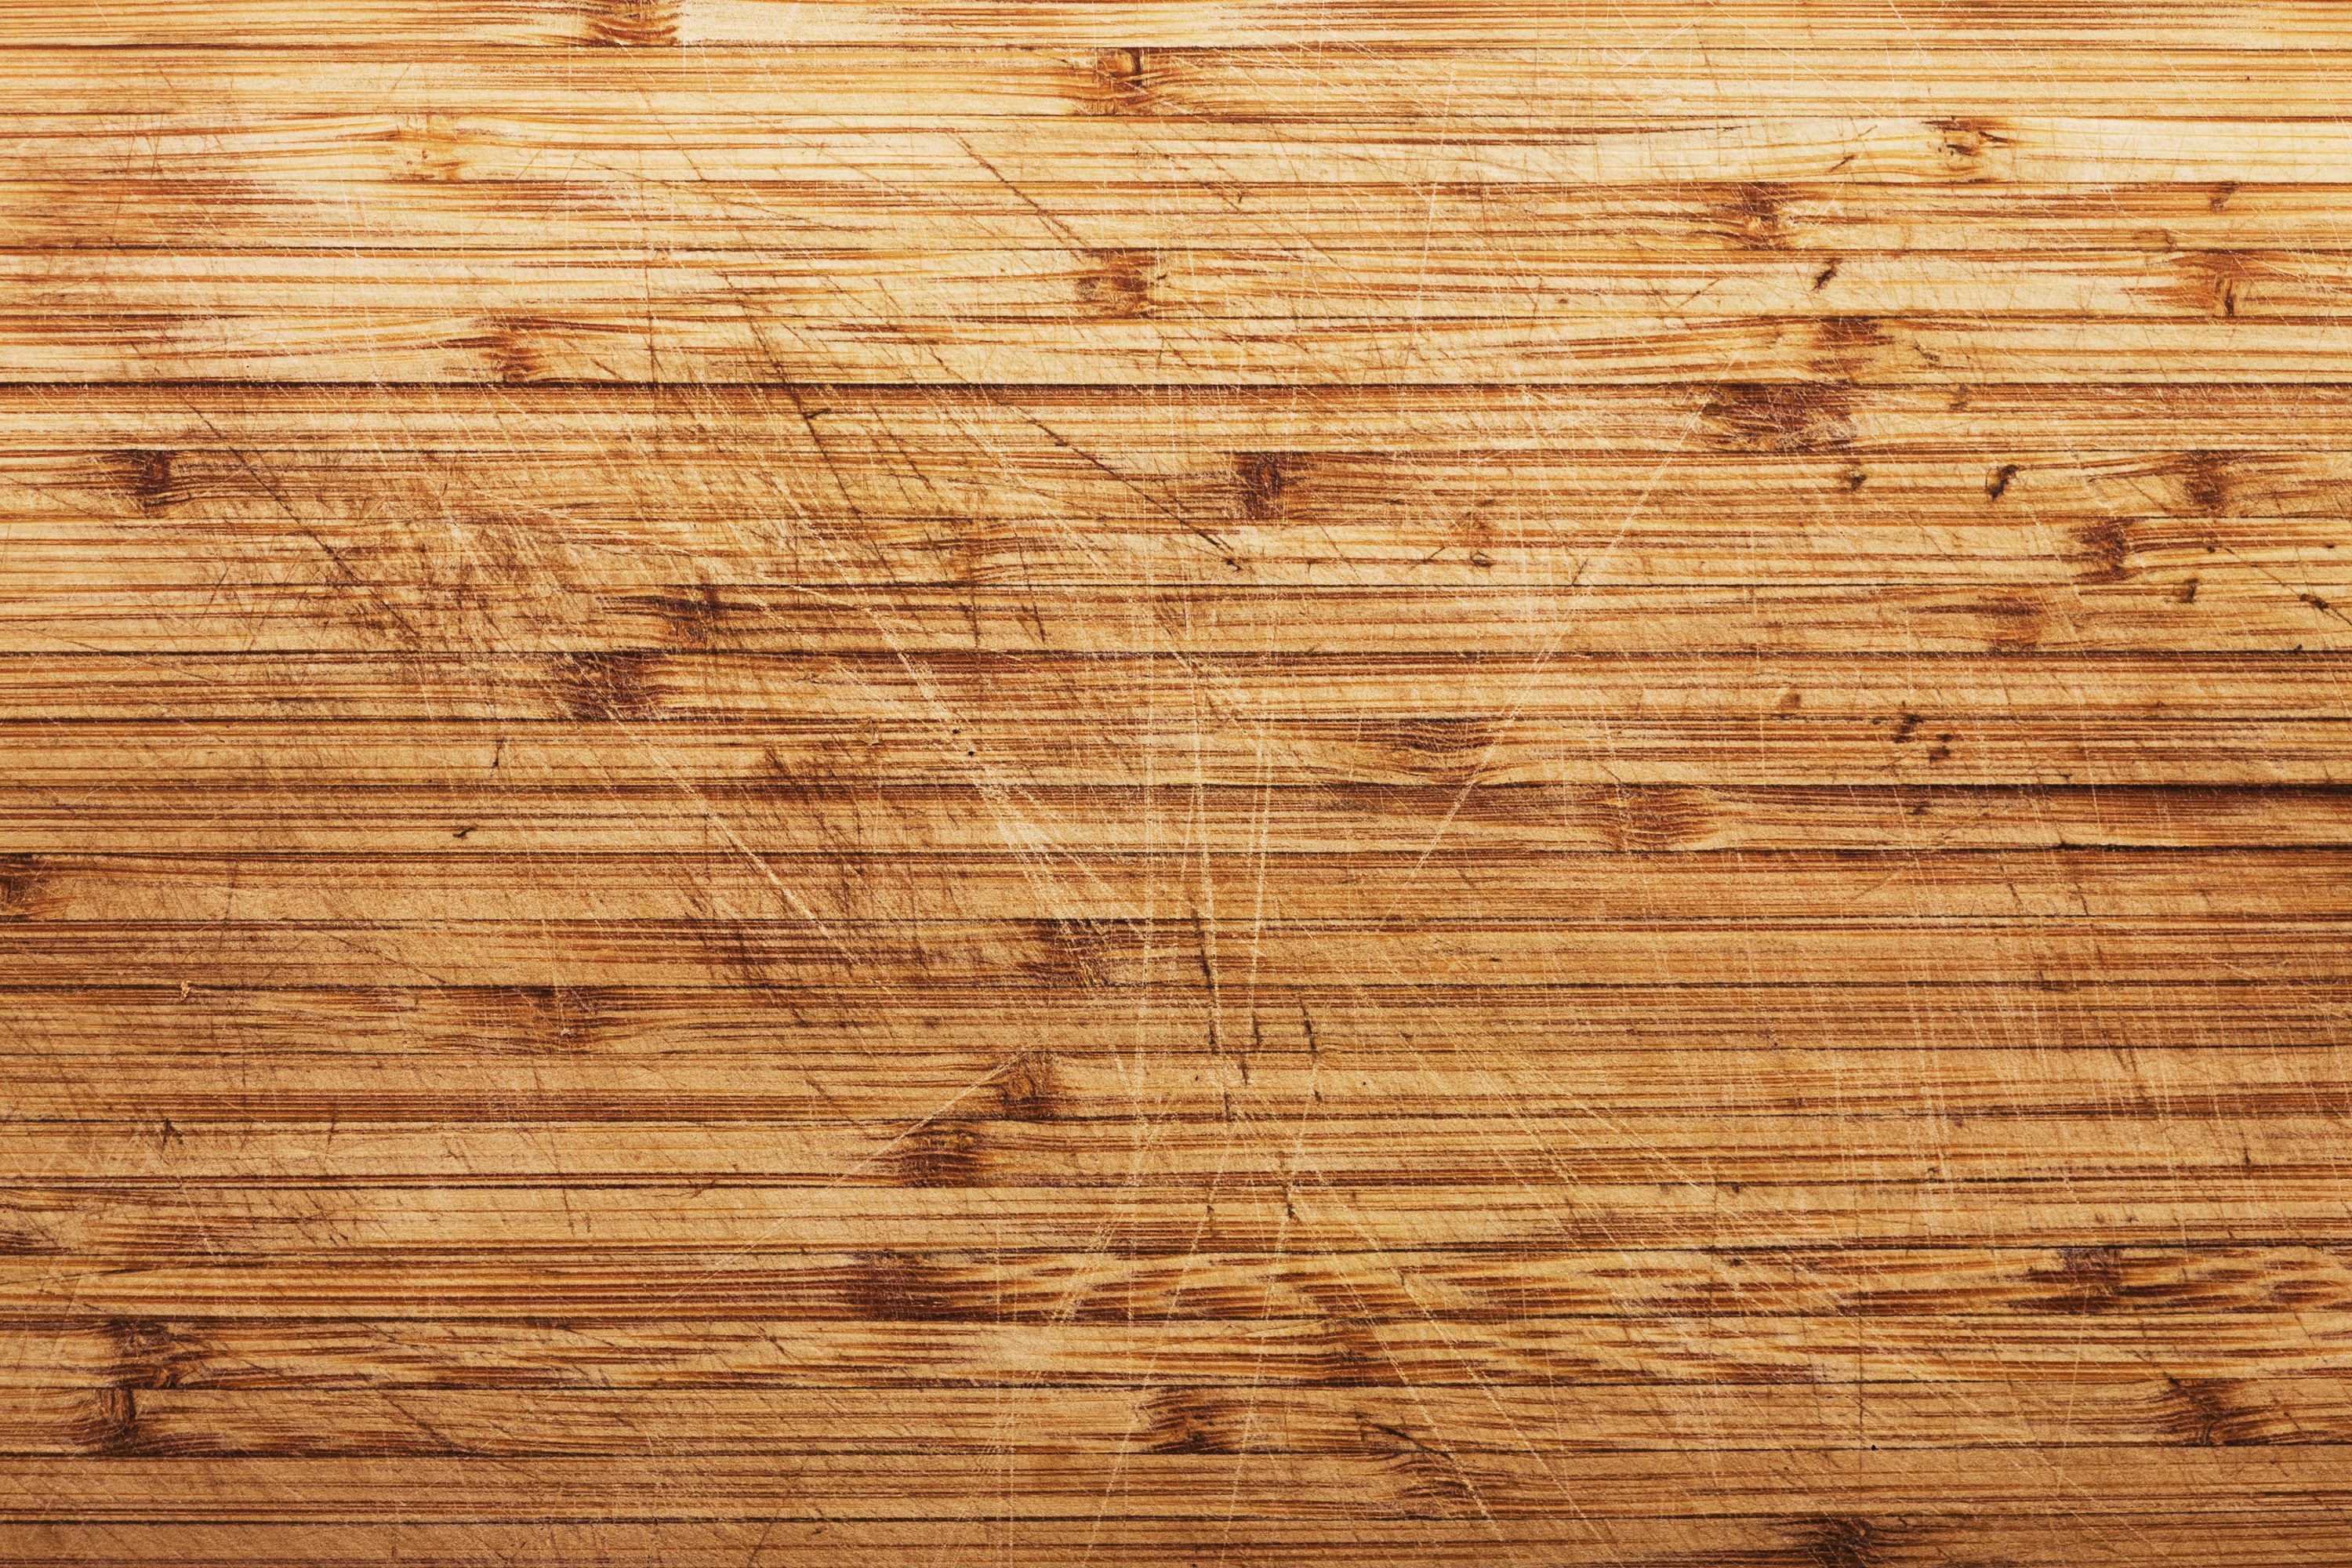 Wooden Cutting Board Texture | Resource Stuff | Pinterest